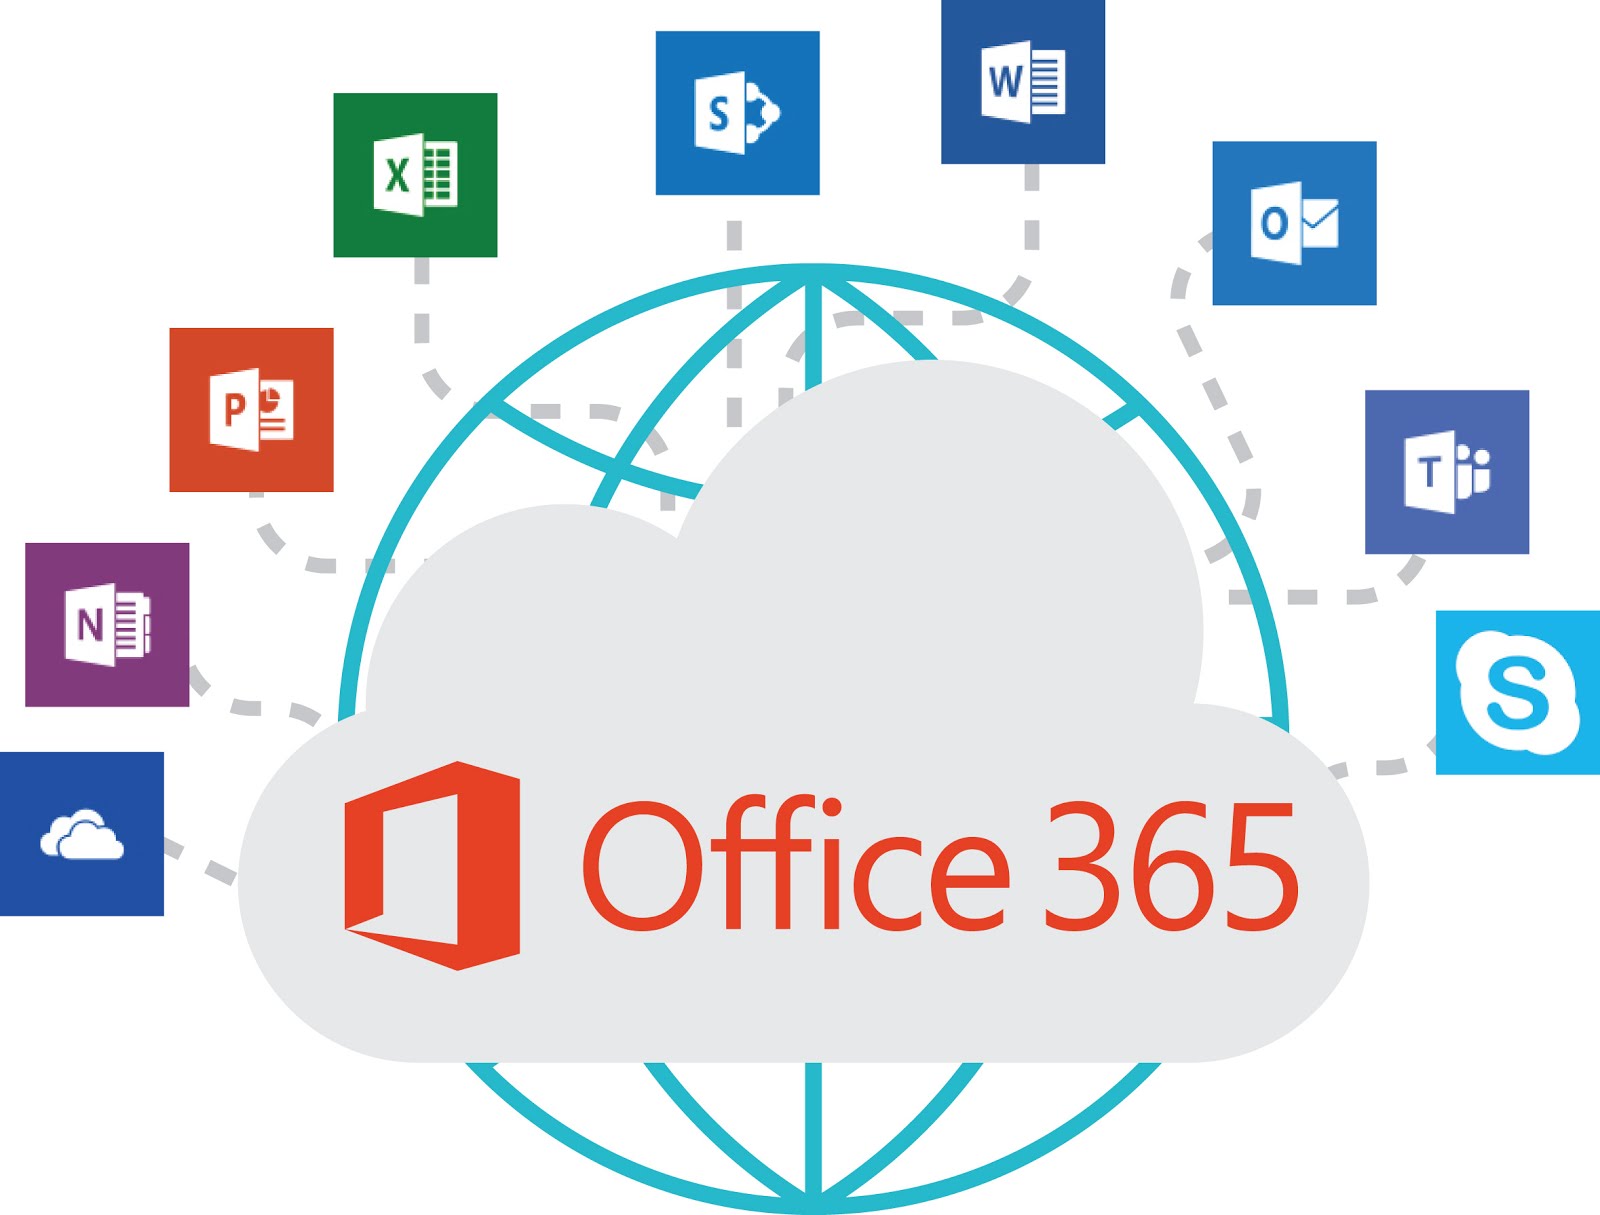 Få et overblik over Microsoft Office 365